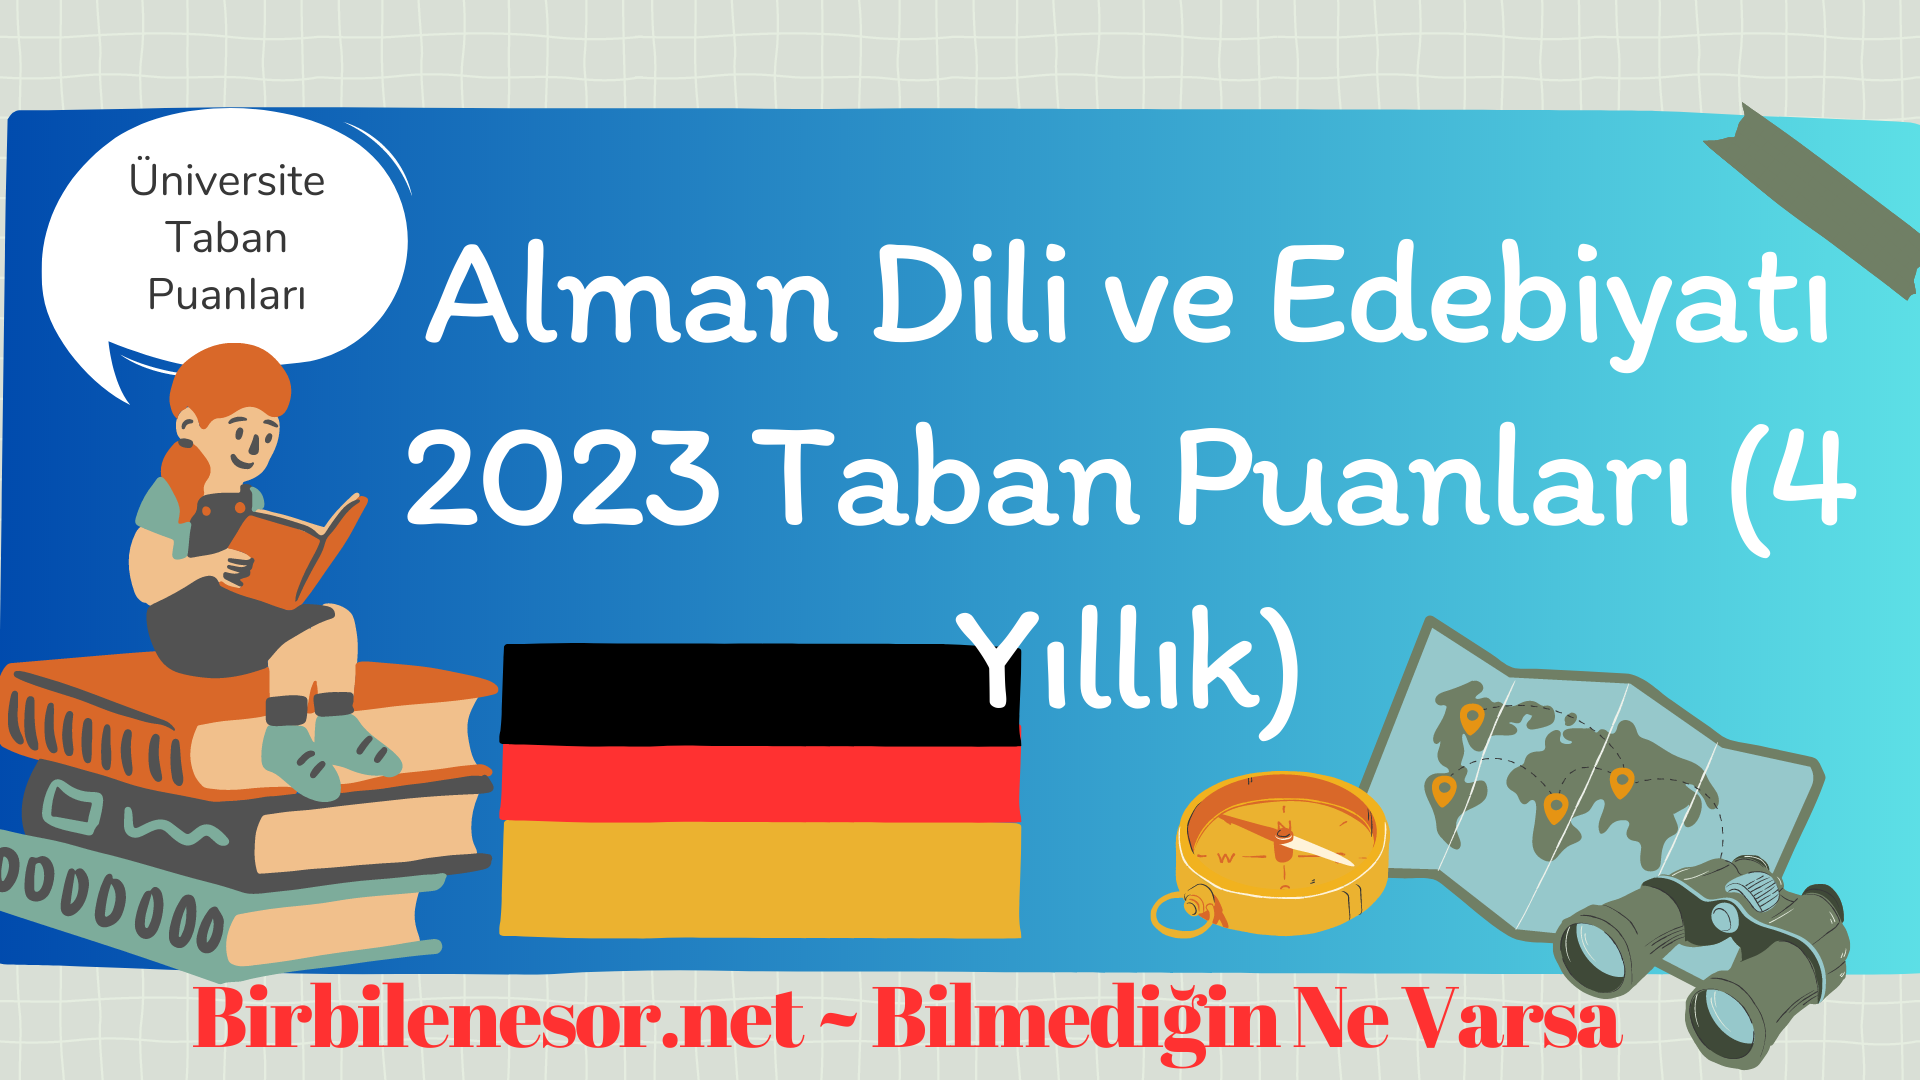 Alman Dili ve Edebiyatı 2023 Taban Puanları (4 Yıllık)